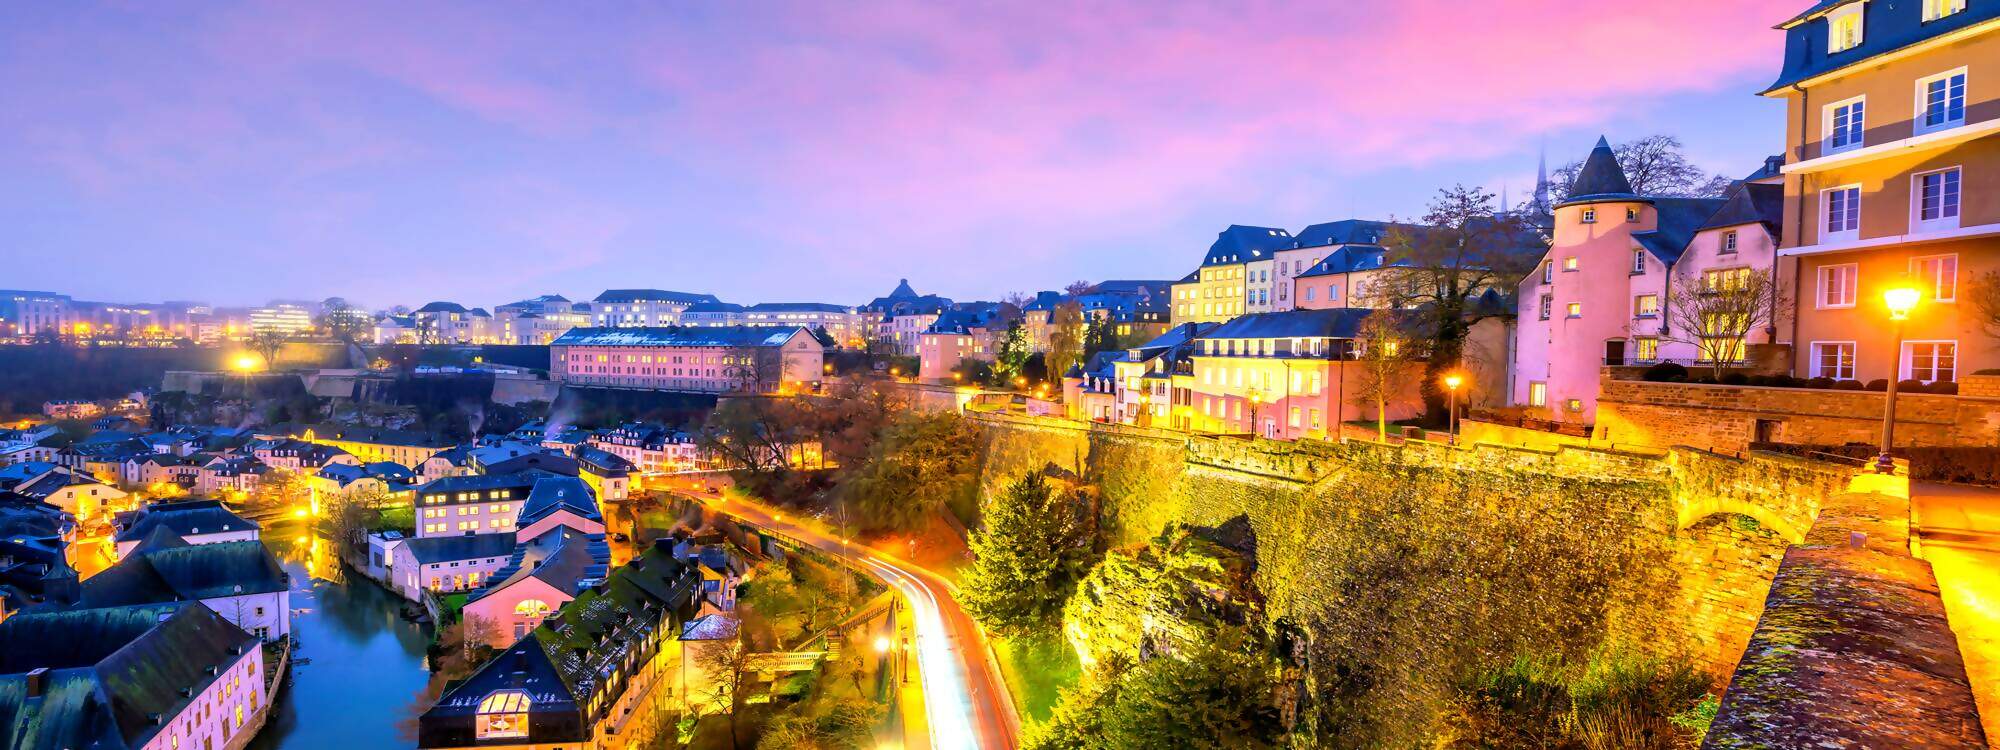 Skyline der Altstadt von Luxemburg